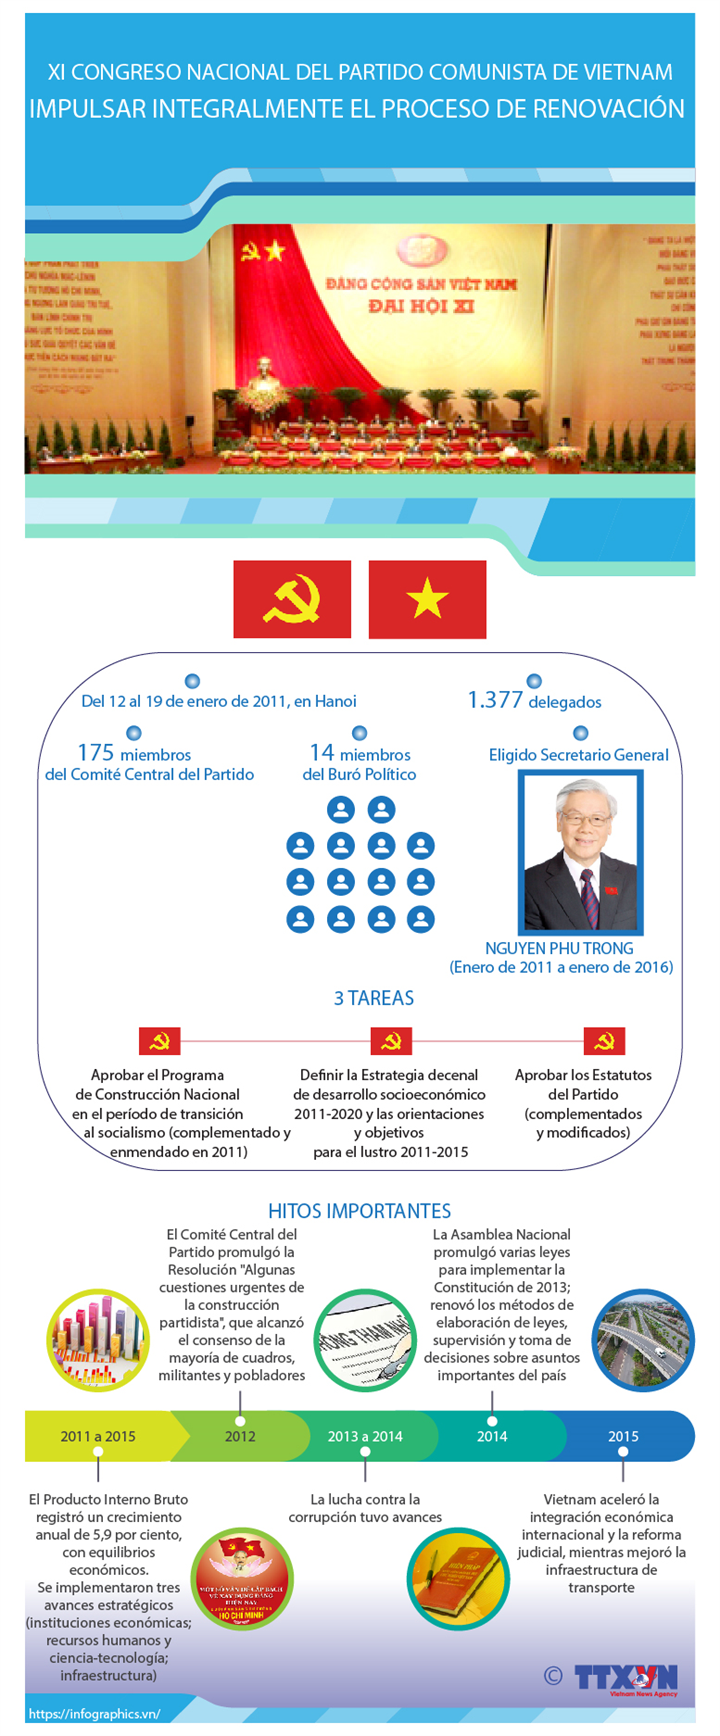 XI Congreso Nacional del Partido Comunista de Vietnam